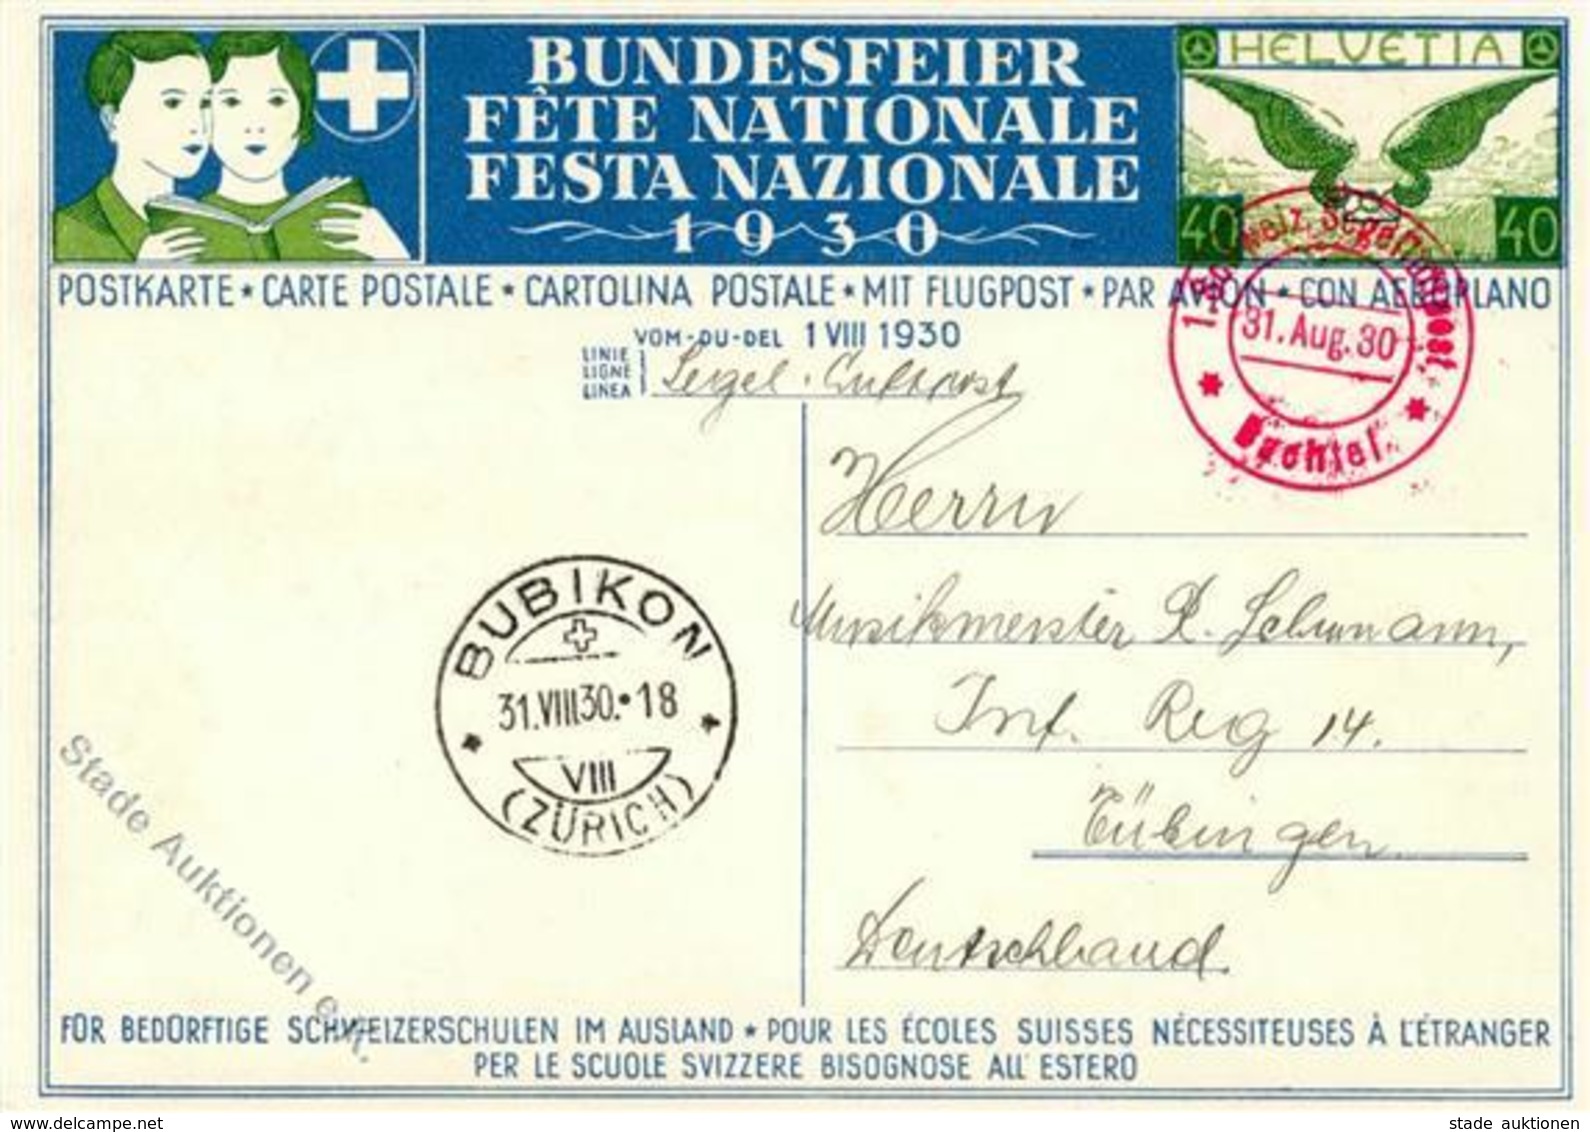 Flugpost CH, 1930, LUPO SF 30.4e, 40 Rp. Bundesfeierkarte (Knabe, Schulbank - SBK Nr.66) Mit Segelluftpost Bachtel, BUBI - Flieger